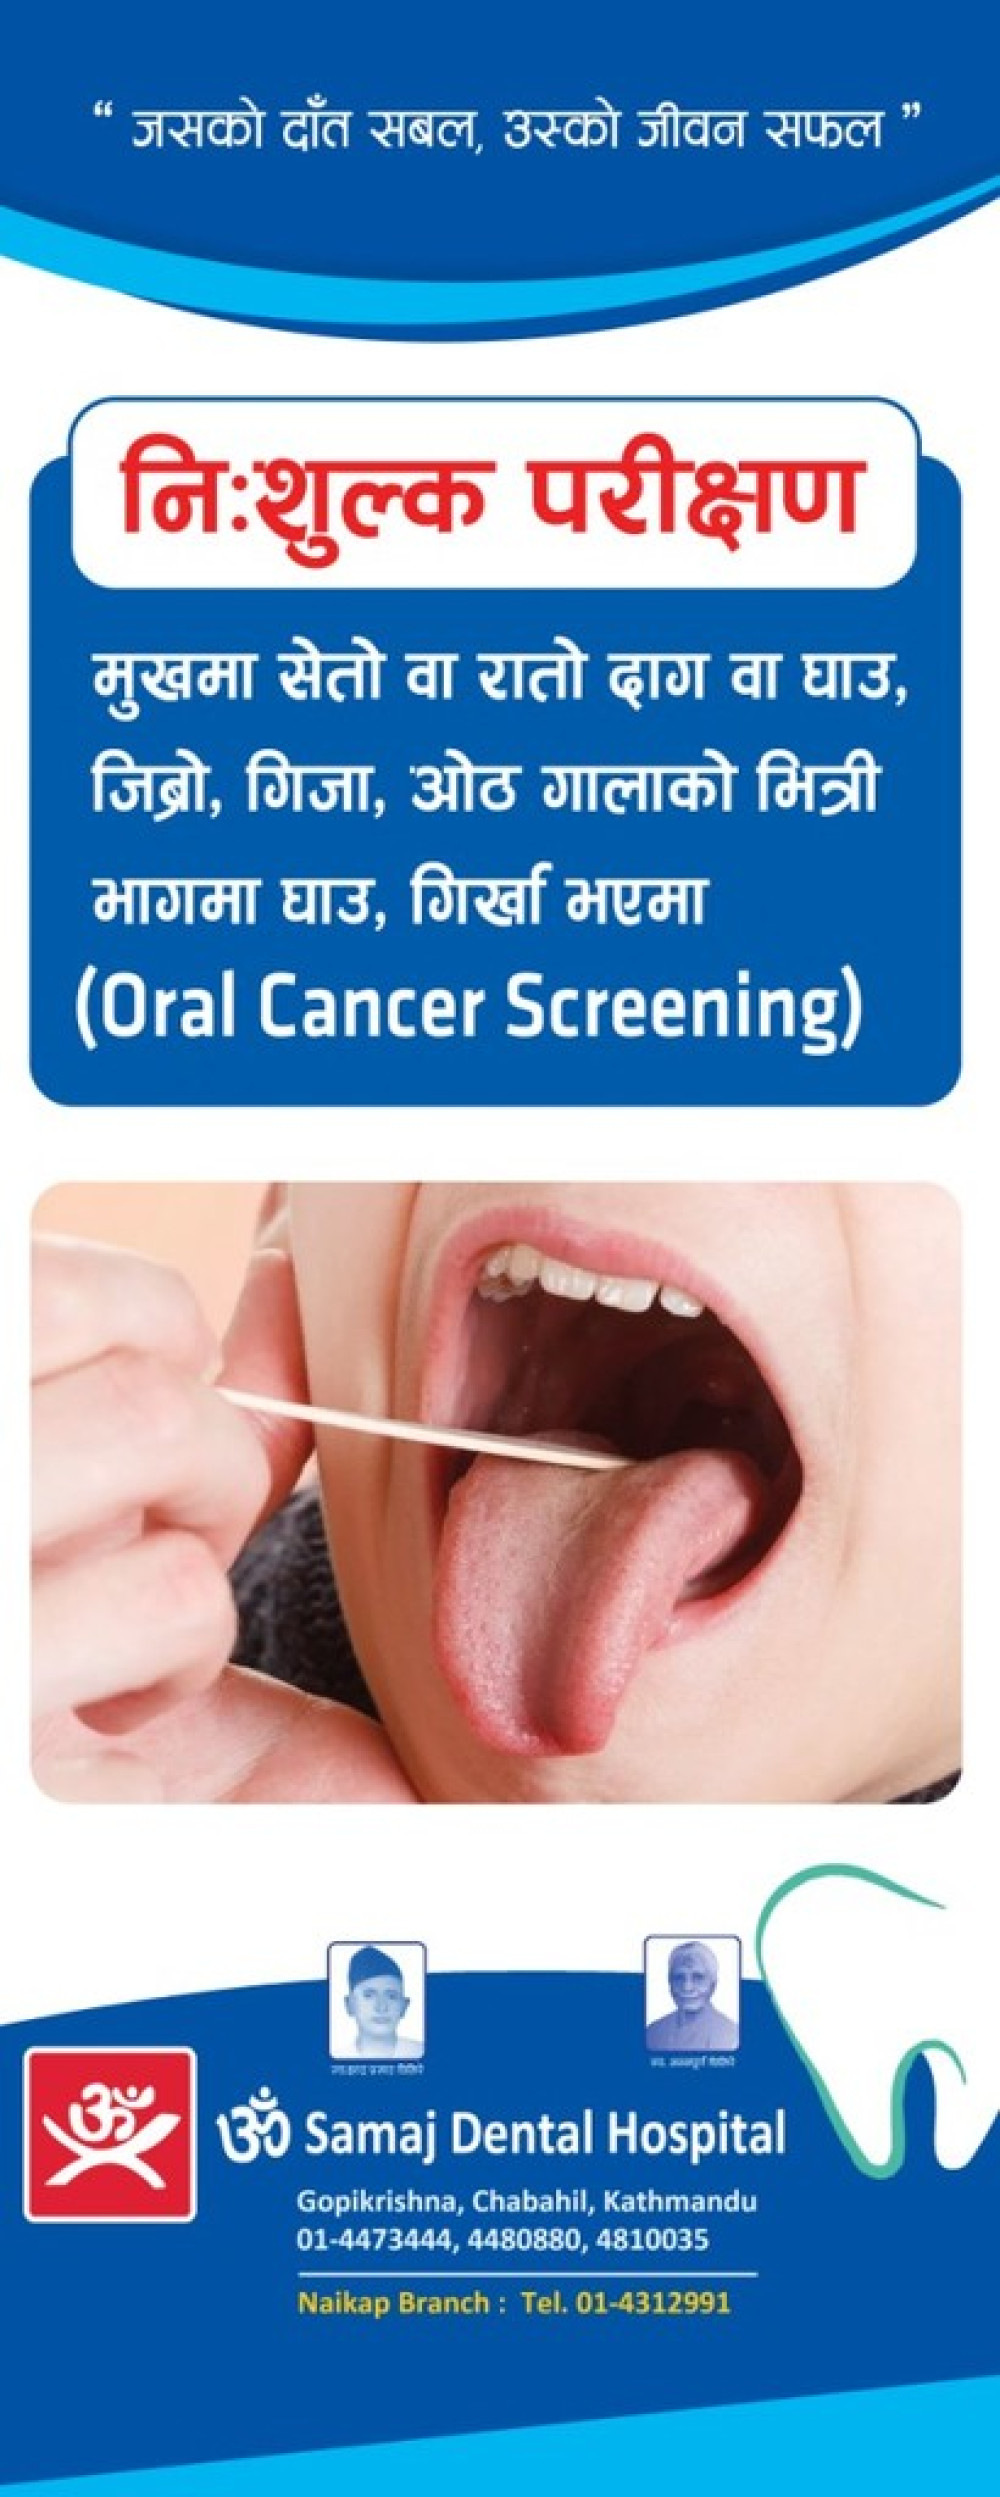 Om Samaj Dental Hospital